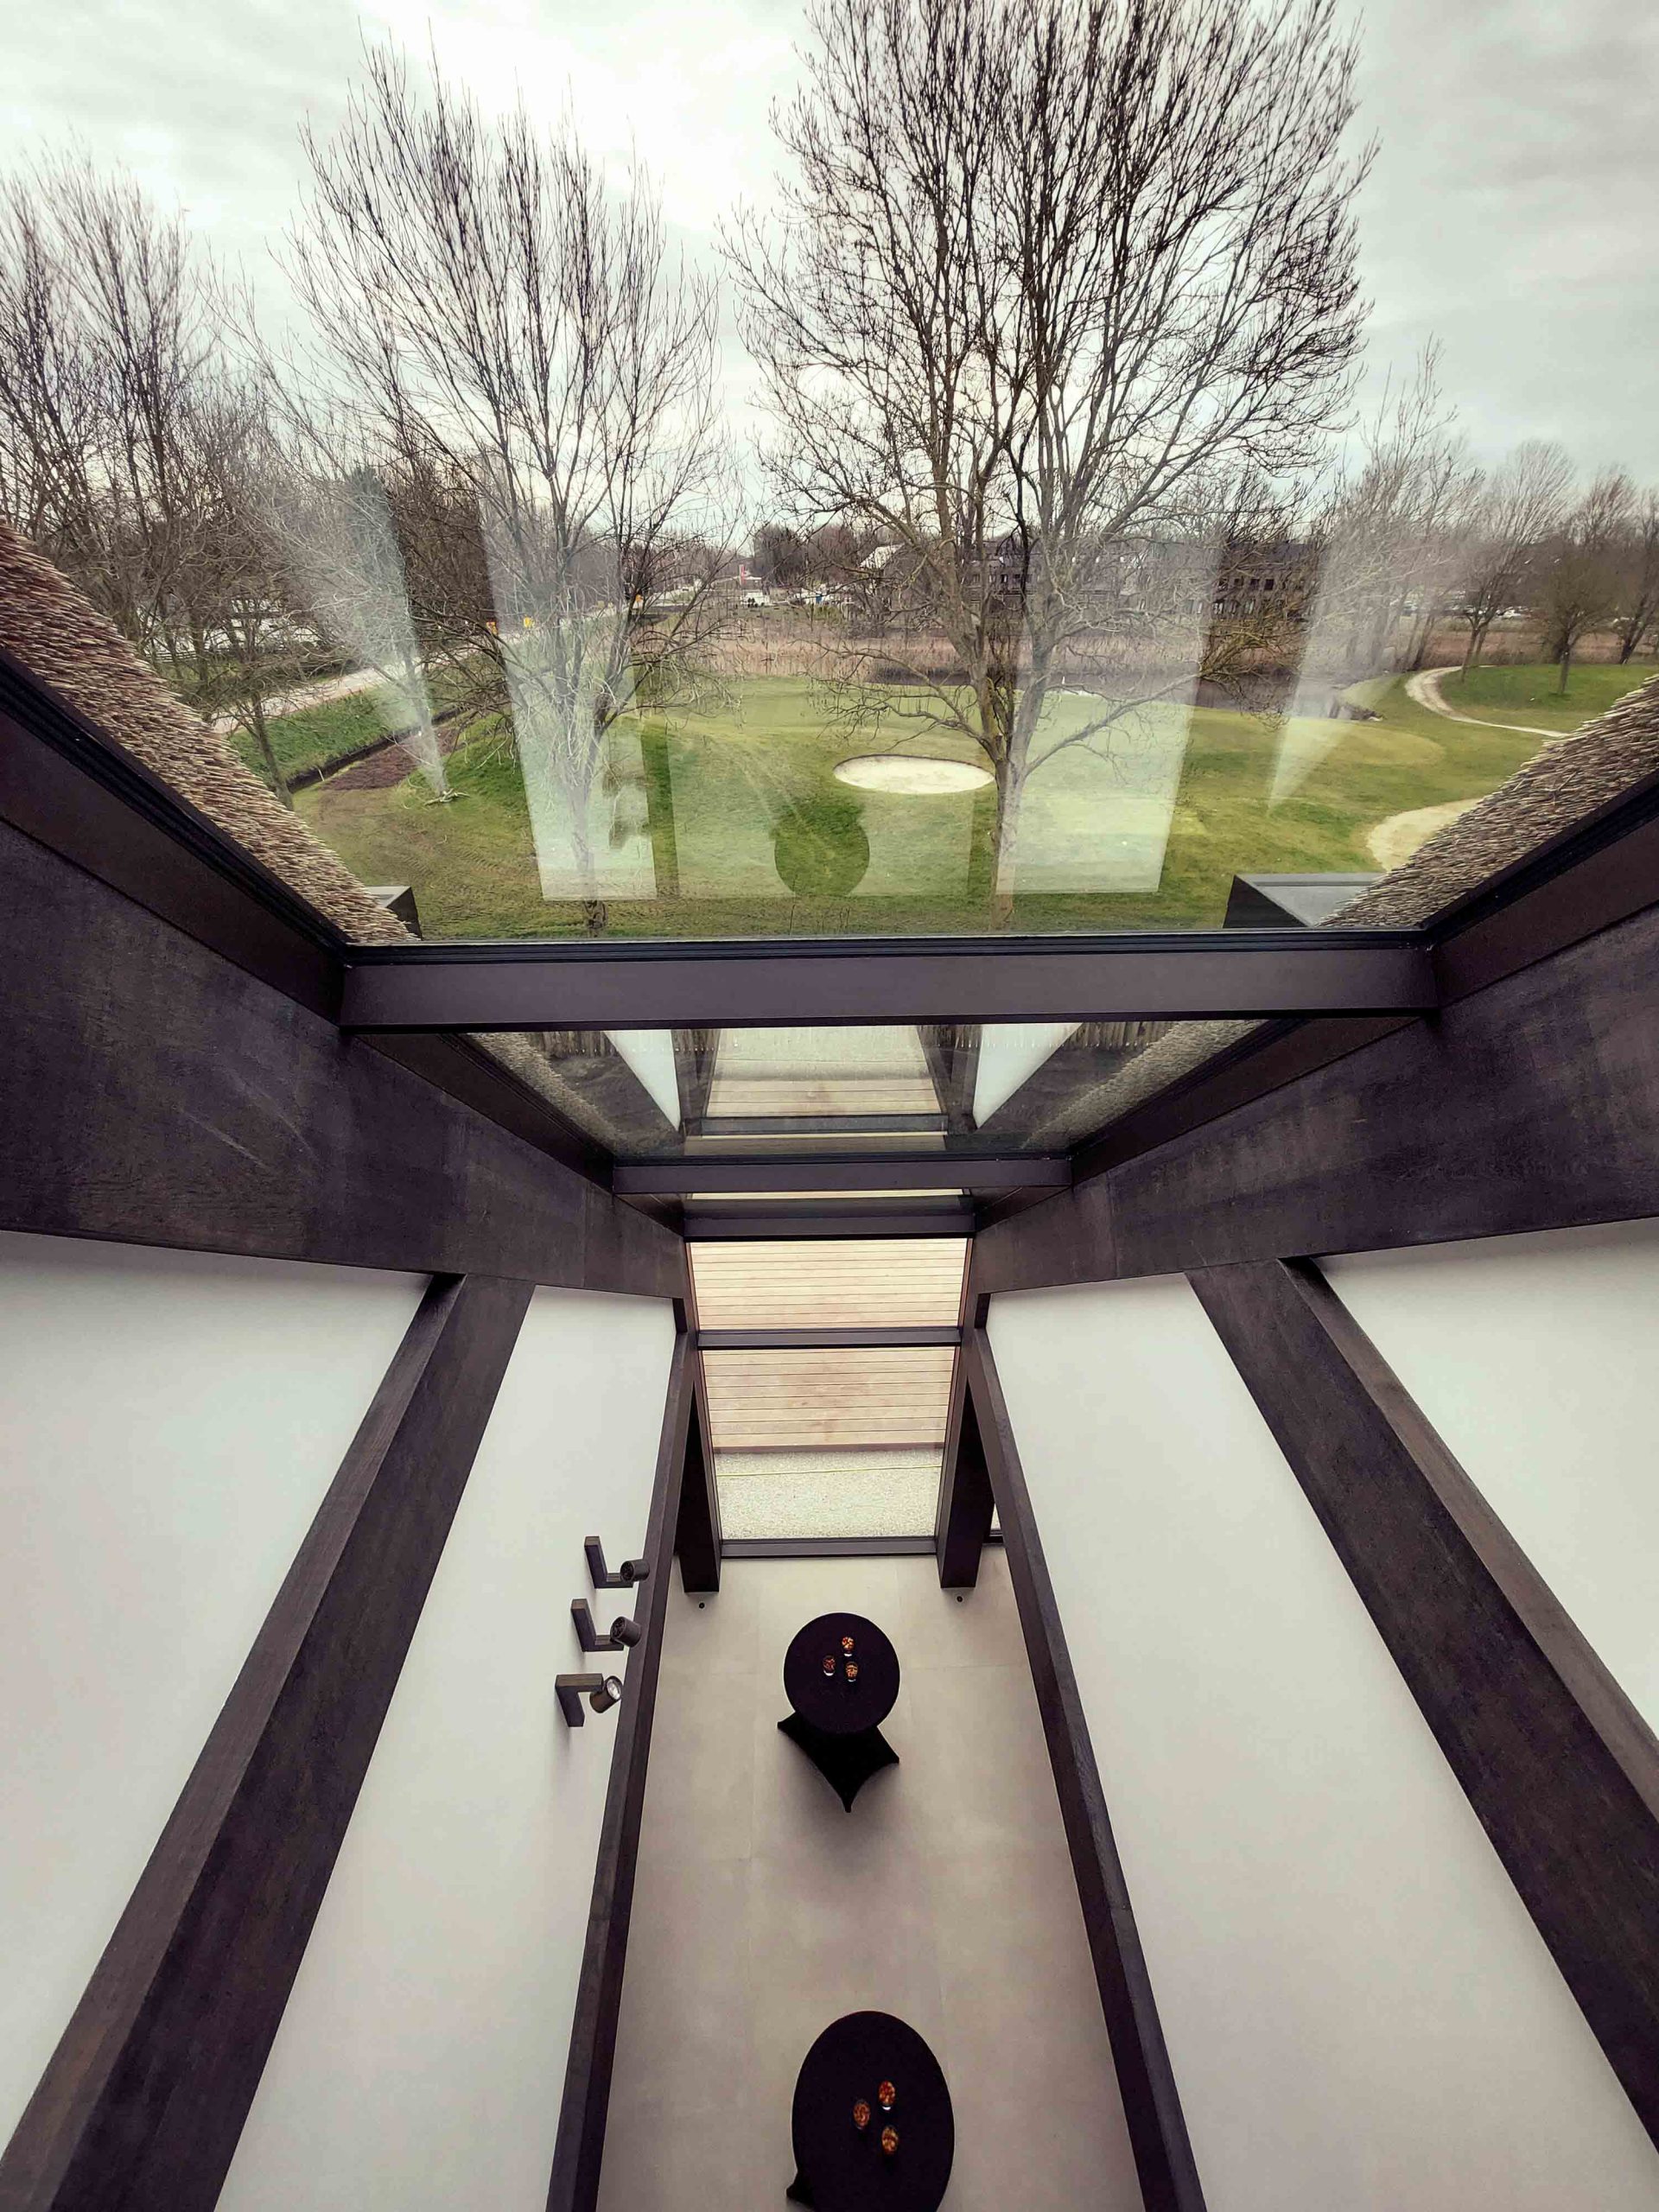 ENZO architectuur N interieur - villa - verbluffend metselwerk - trap - entree - Oplevering riante stolpboerderij